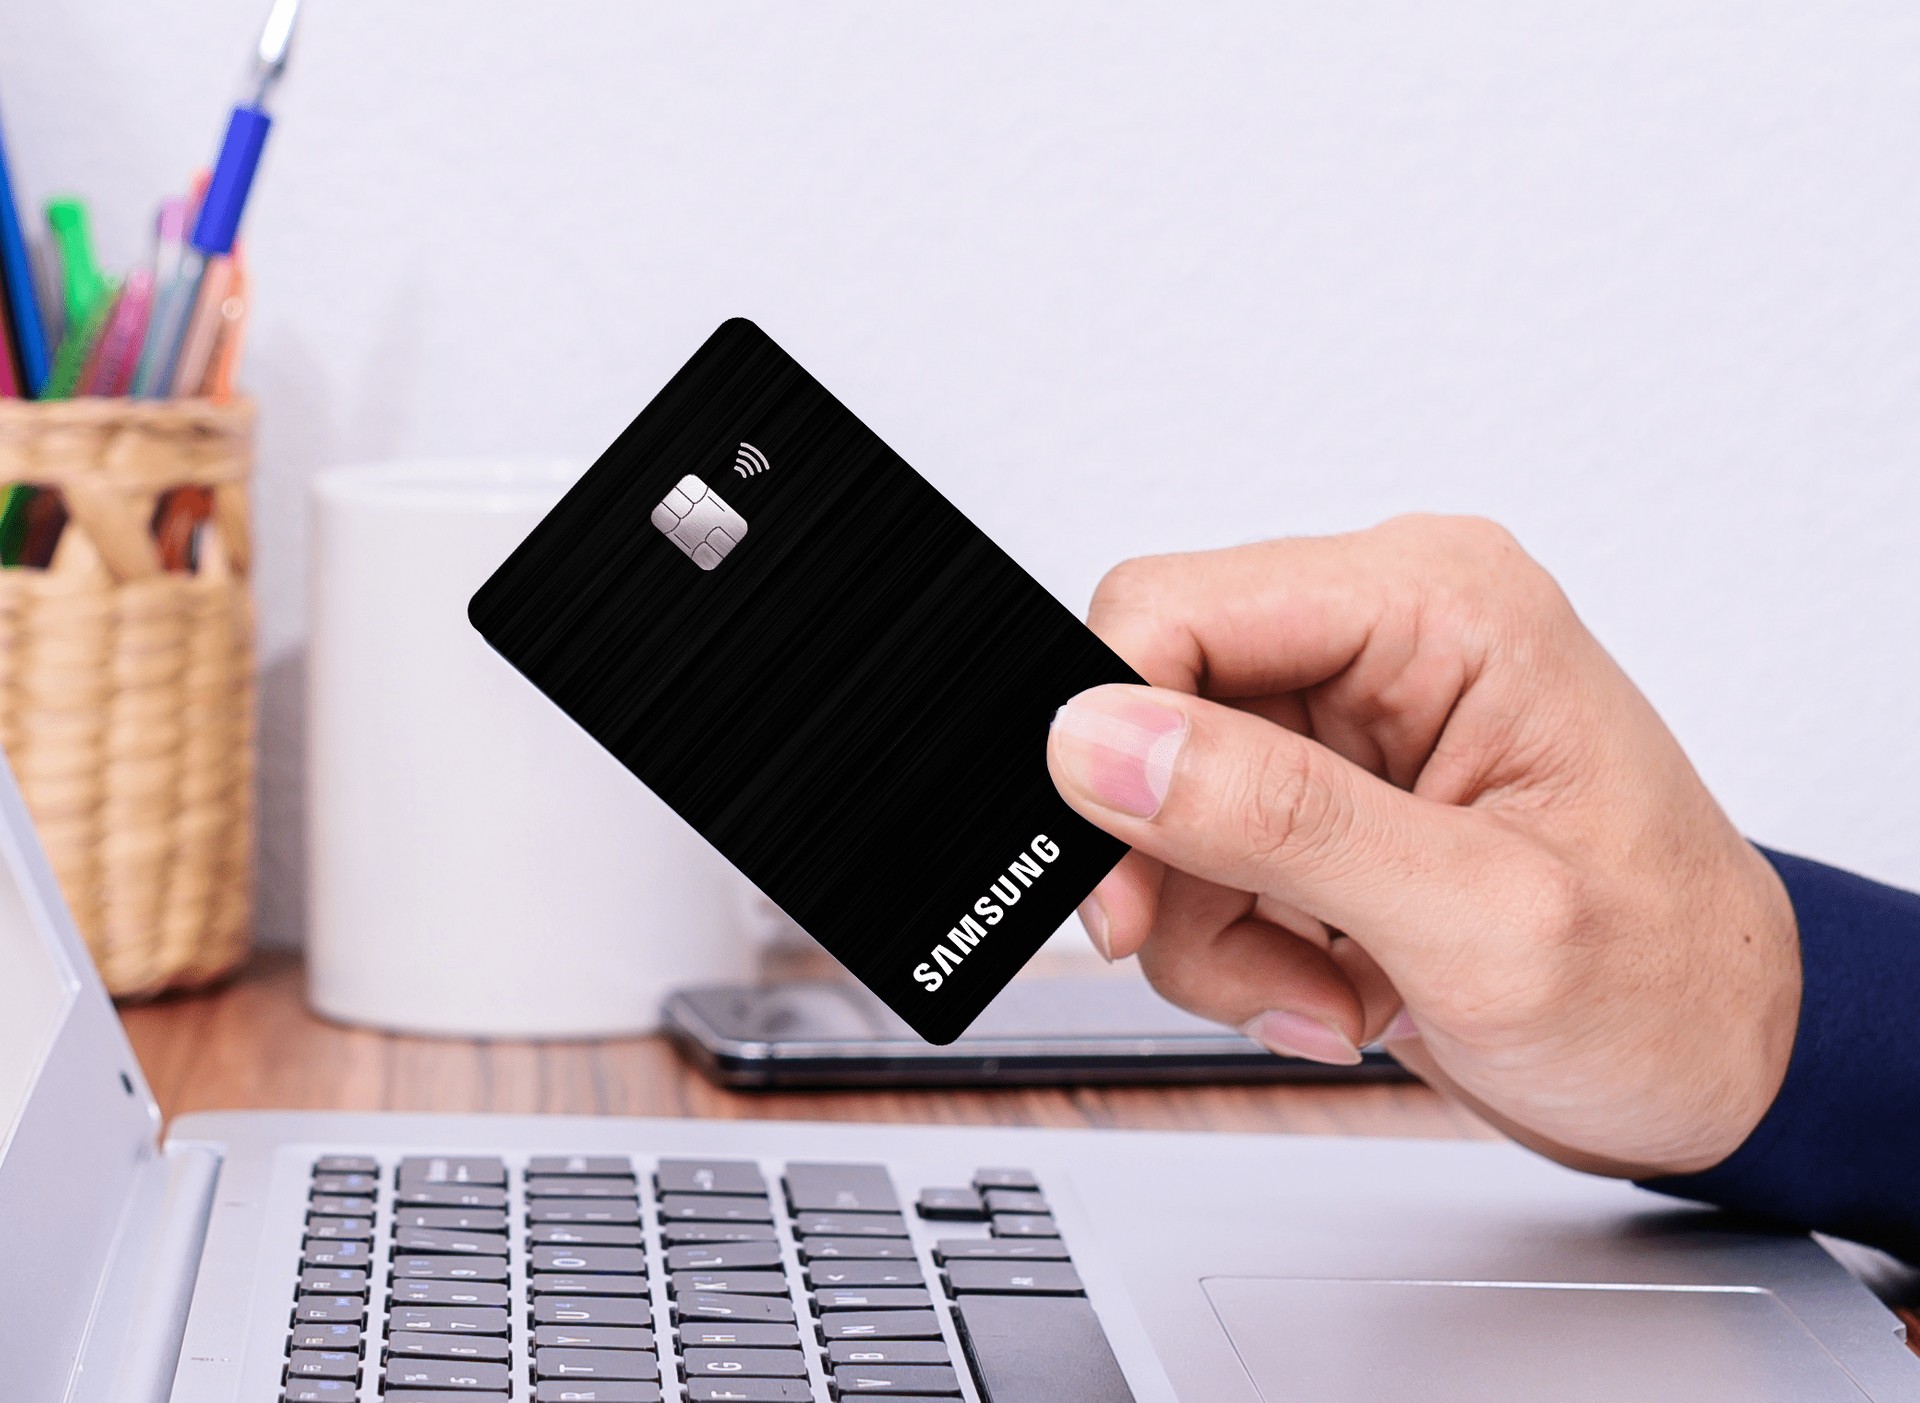 Samsung e Itaú anunciam novo plano de cartão de crédito que garante pontos no iupp